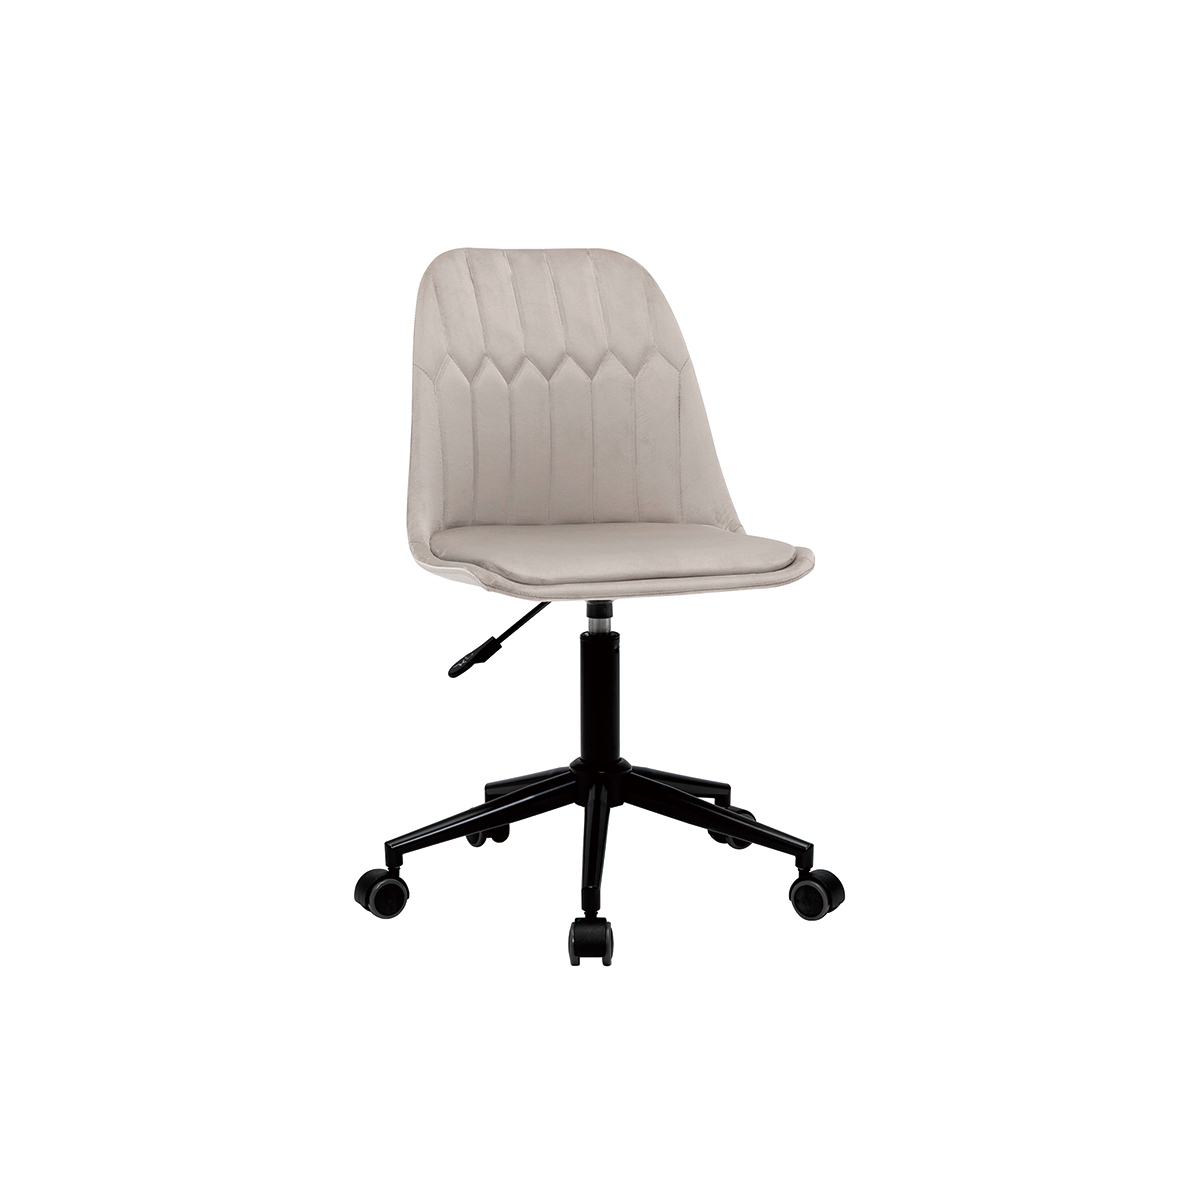 Chaise de bureau design en tissu velours taupe FUSE vue1